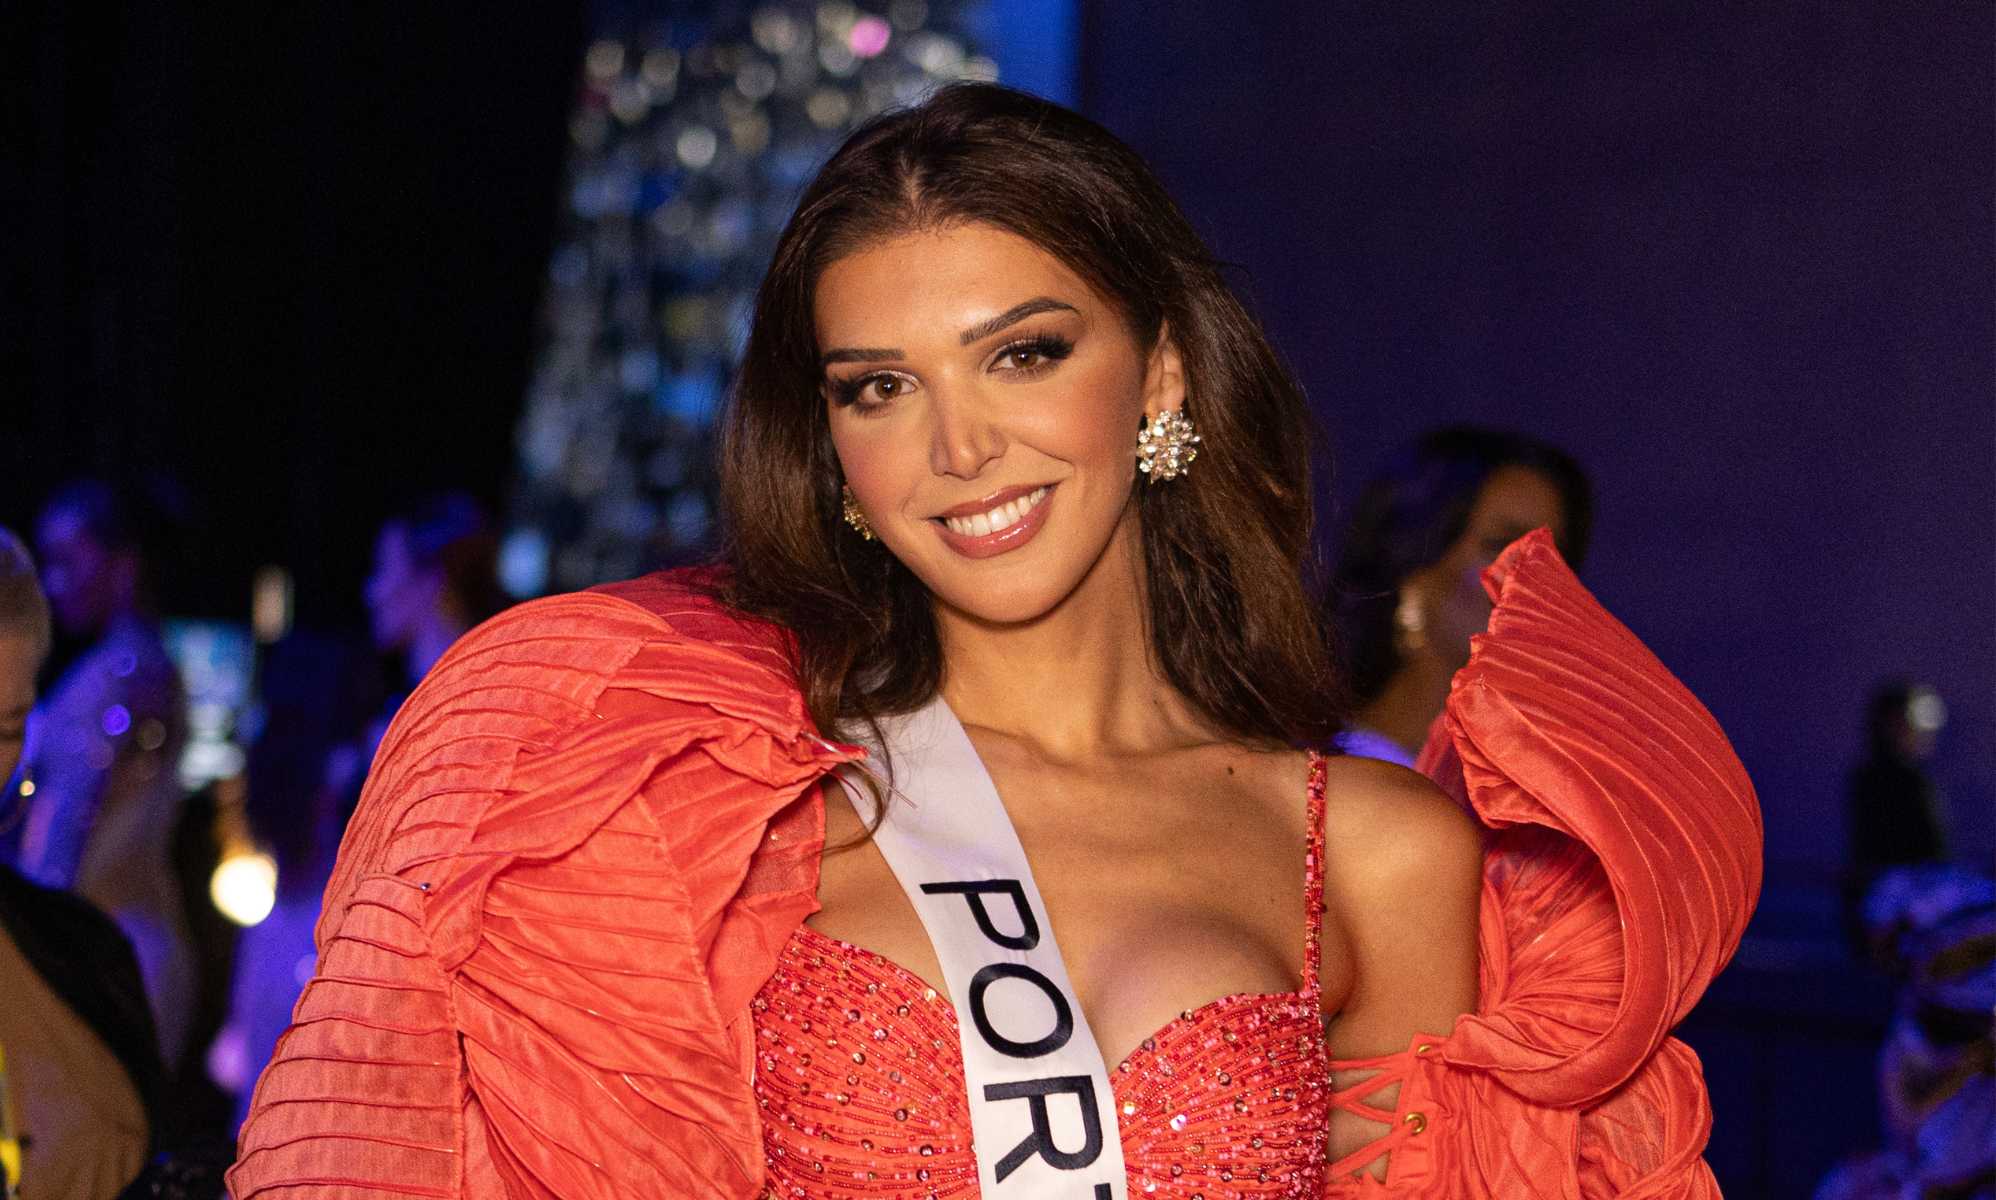 Cómo Miss Portugal se sintió "acogida y respetada" como concursante trans de Miss Universo